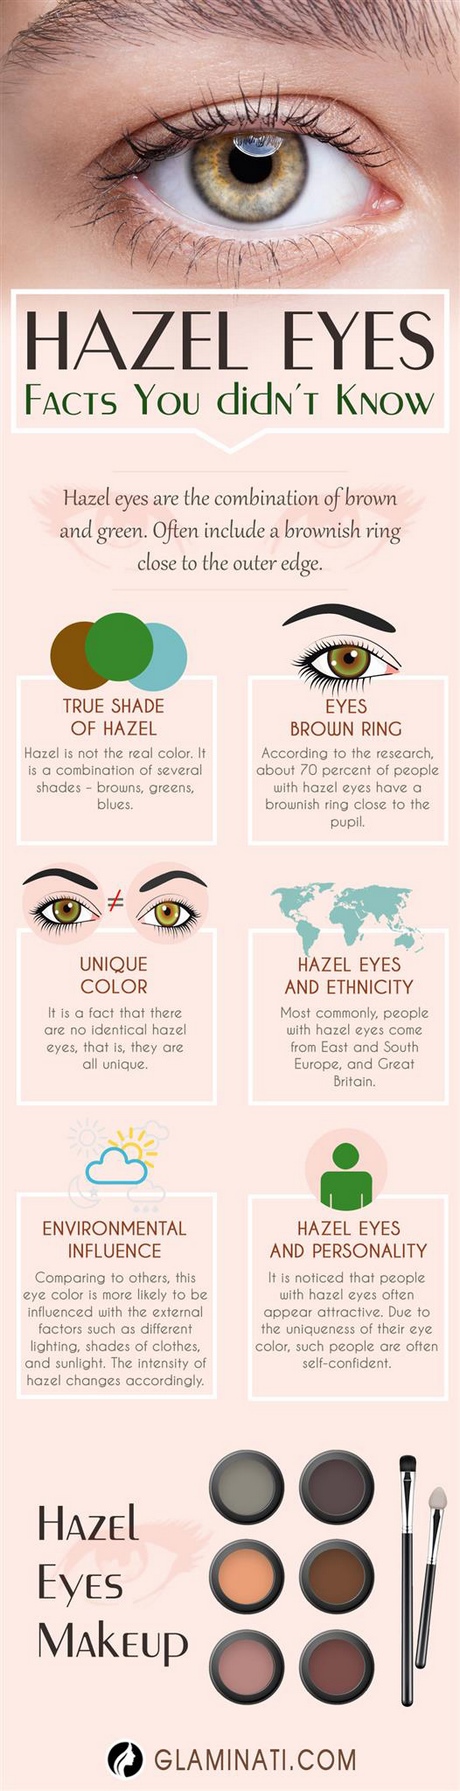 makeup-tutorials-for-hazel-eyes-49 Make-up tutorials voor bruine ogen